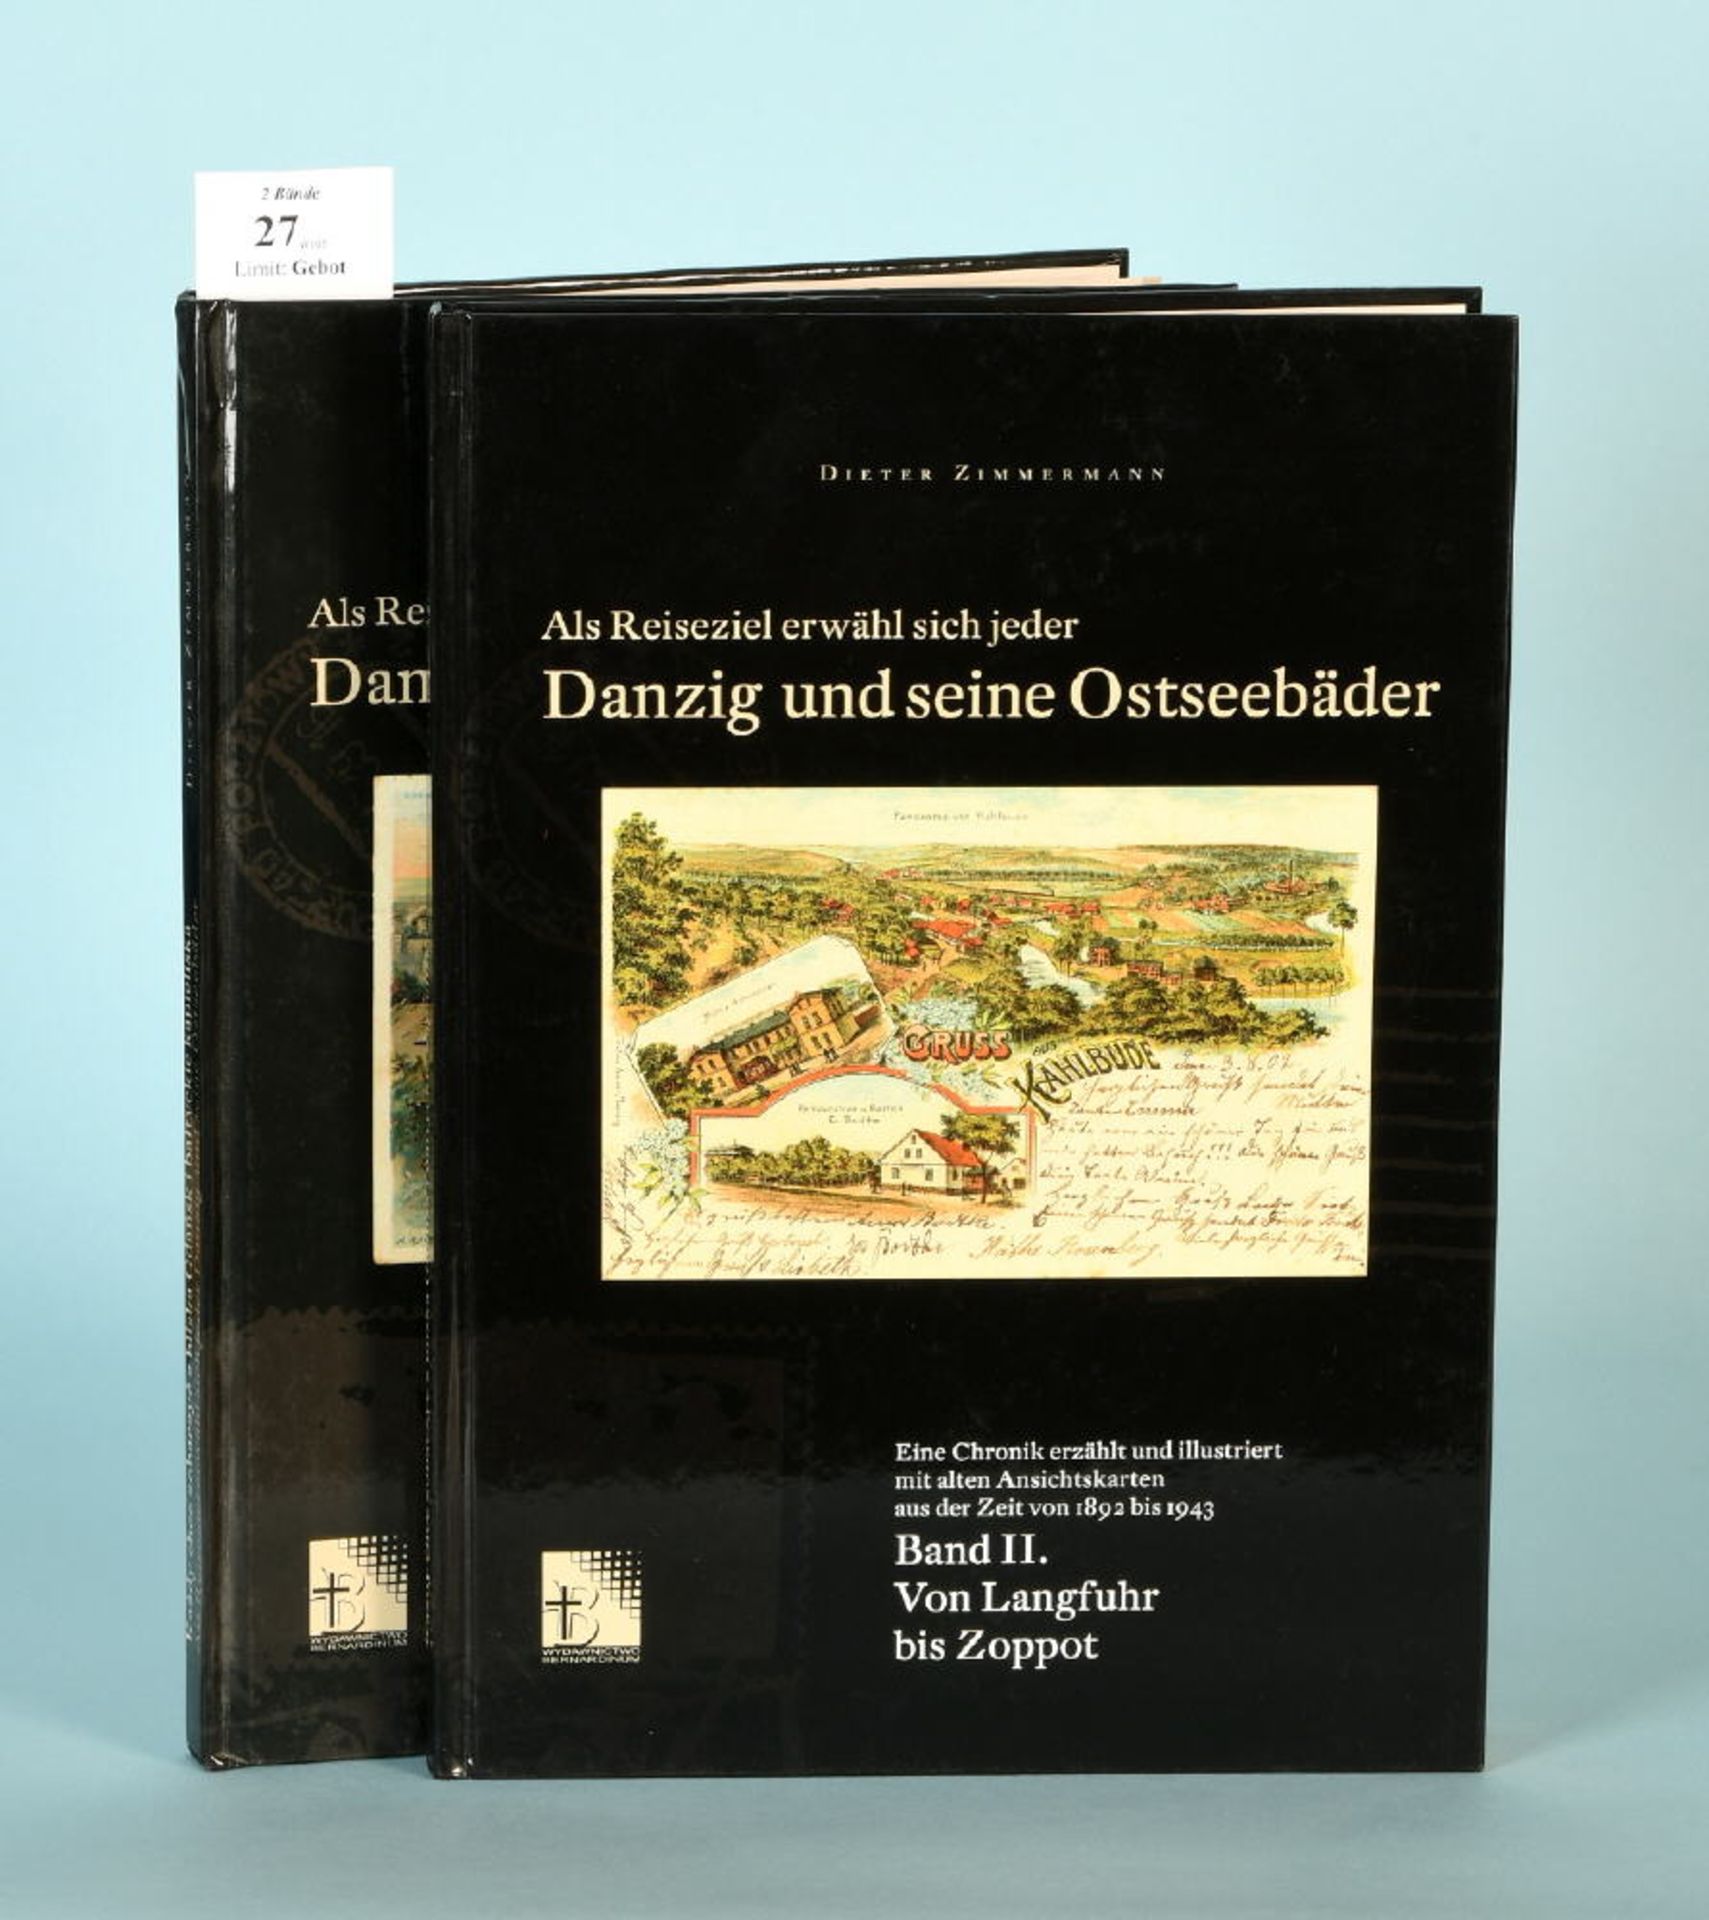 Zimmermann, Dieter "Als Reiseziel erwähl sich jeder Danzig..."